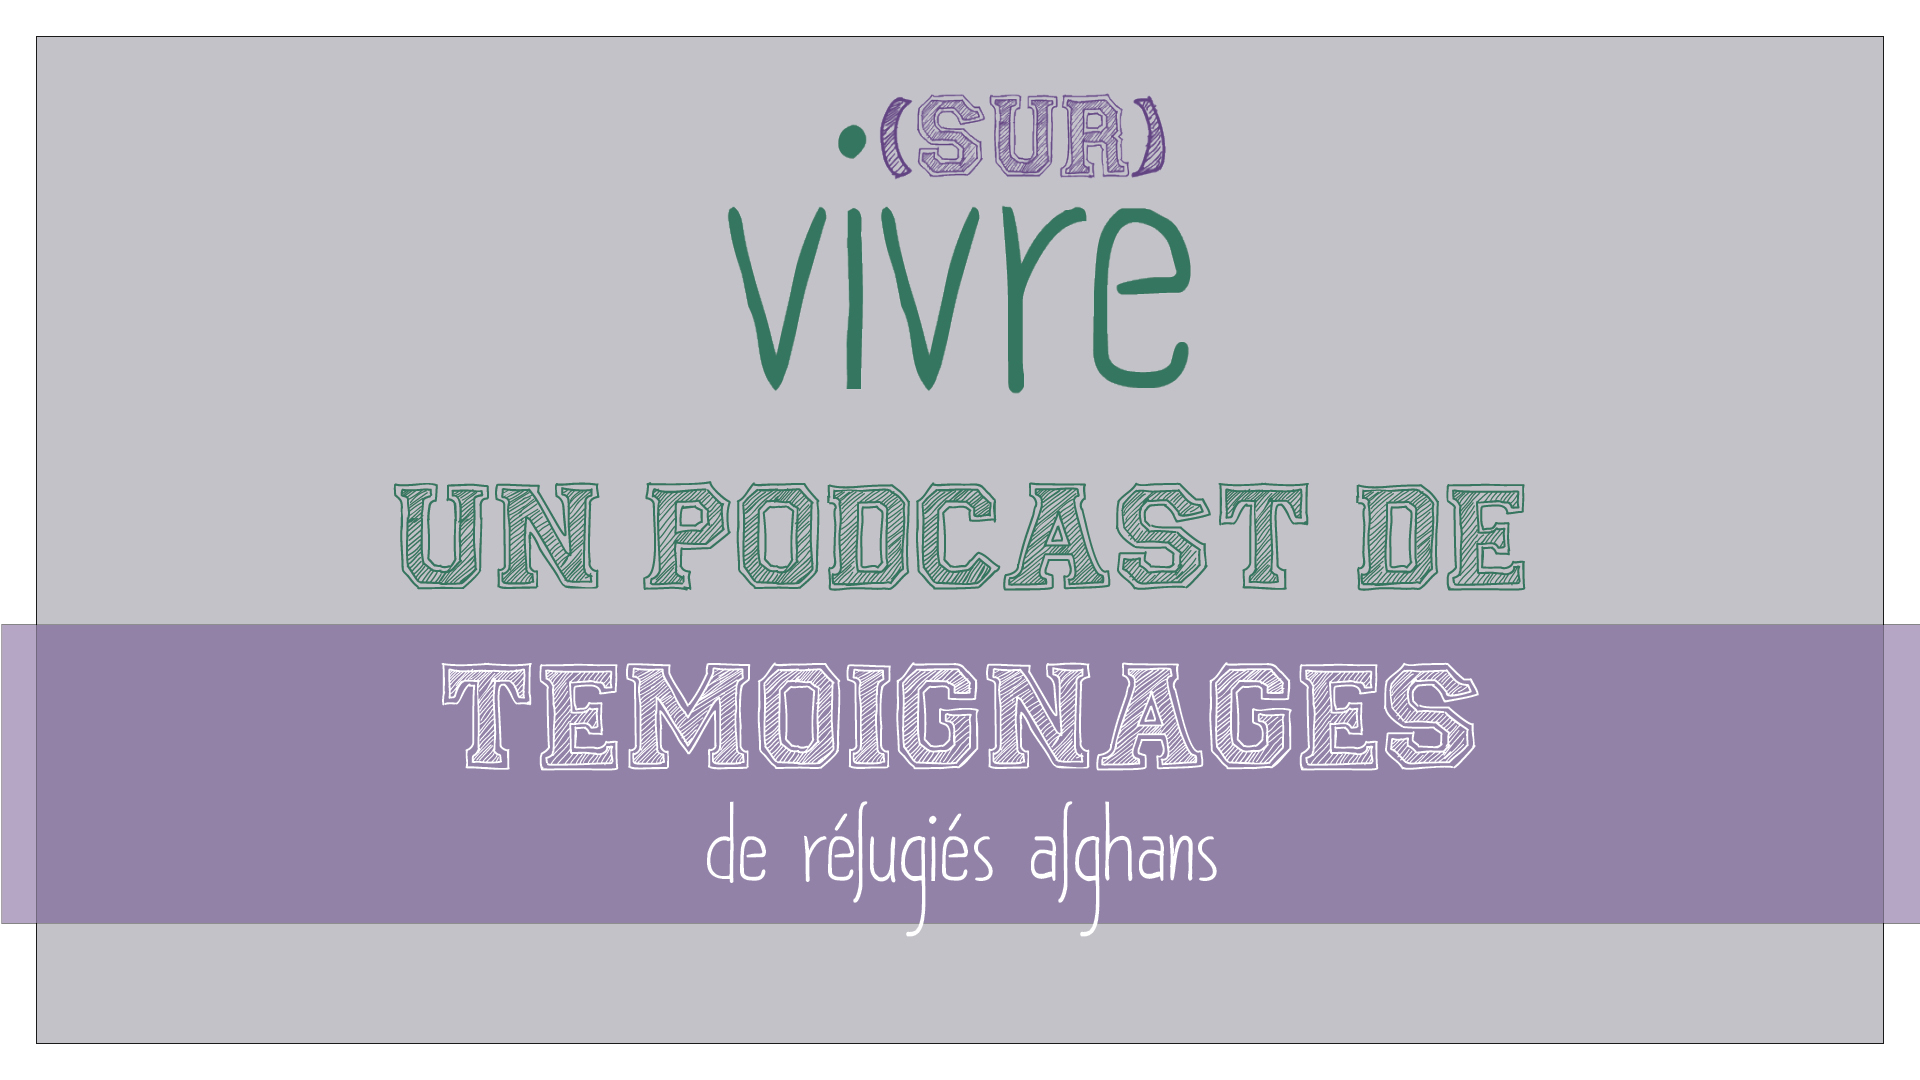 (sur)Vivre est un podcast accompagné d’un compte Instagram qui donne la parole à deux réfugiés afghans installés en France, qui racontent leur intégration. Par Ellyne Neuvéglise